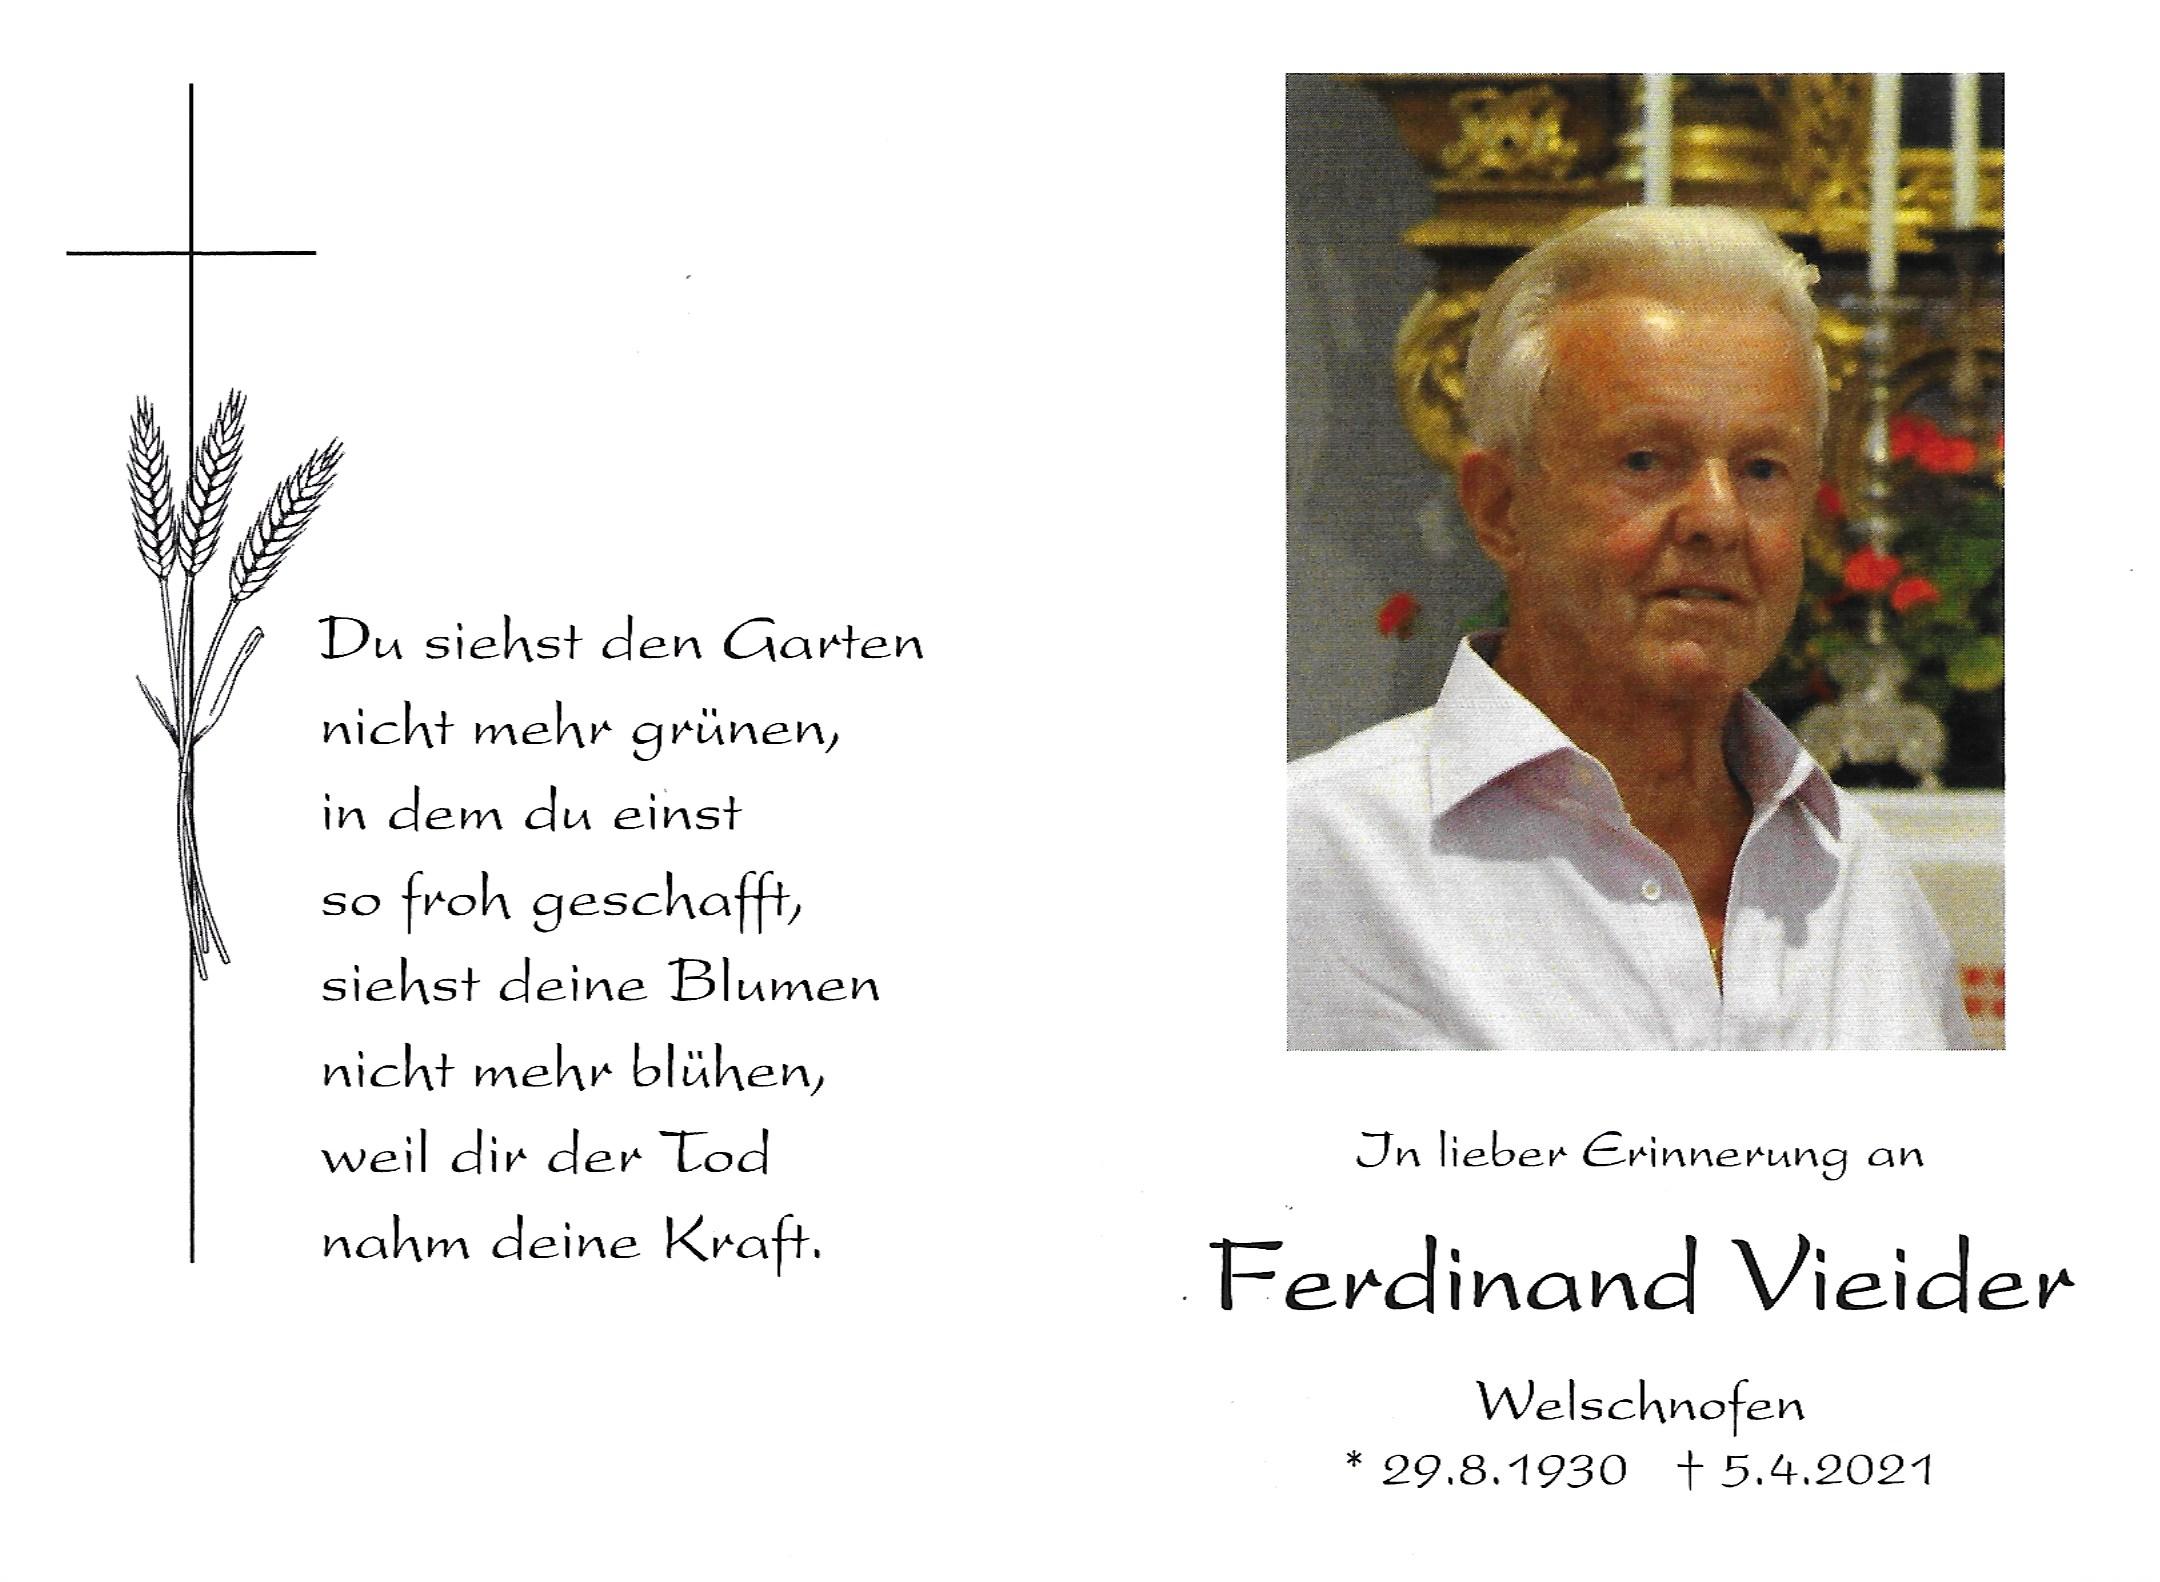 Ferdinand Vieider